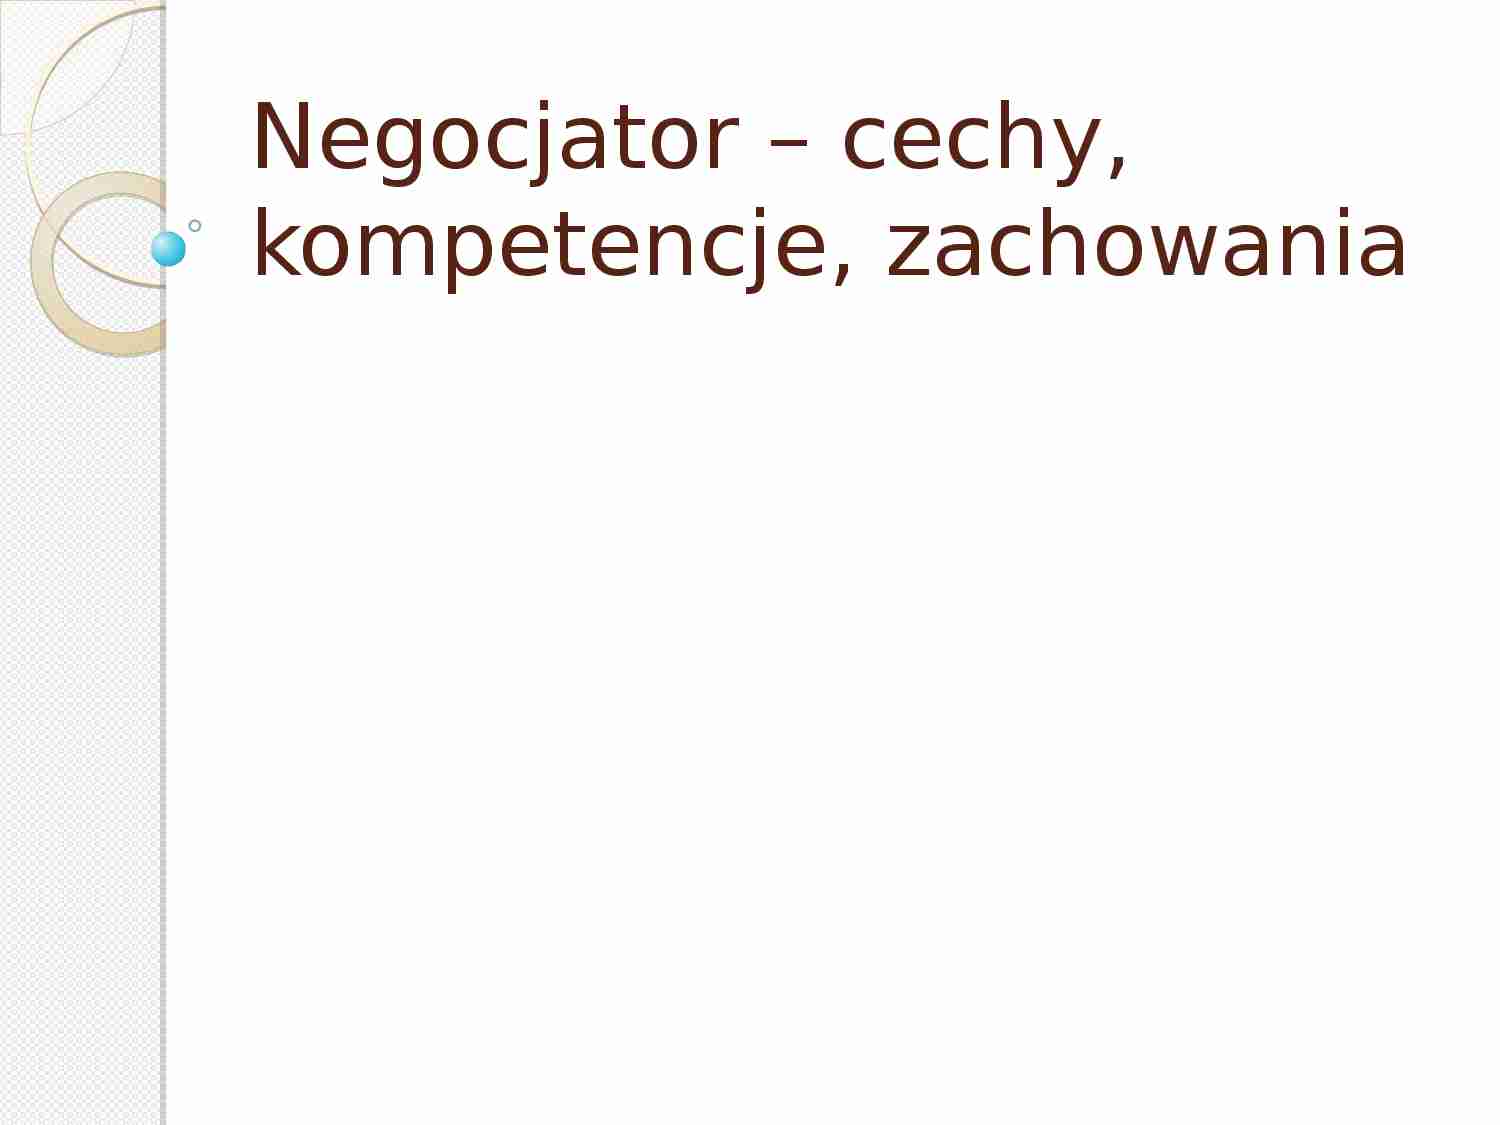 Negocjator – cechy, kompetencje, zachowania - strona 1